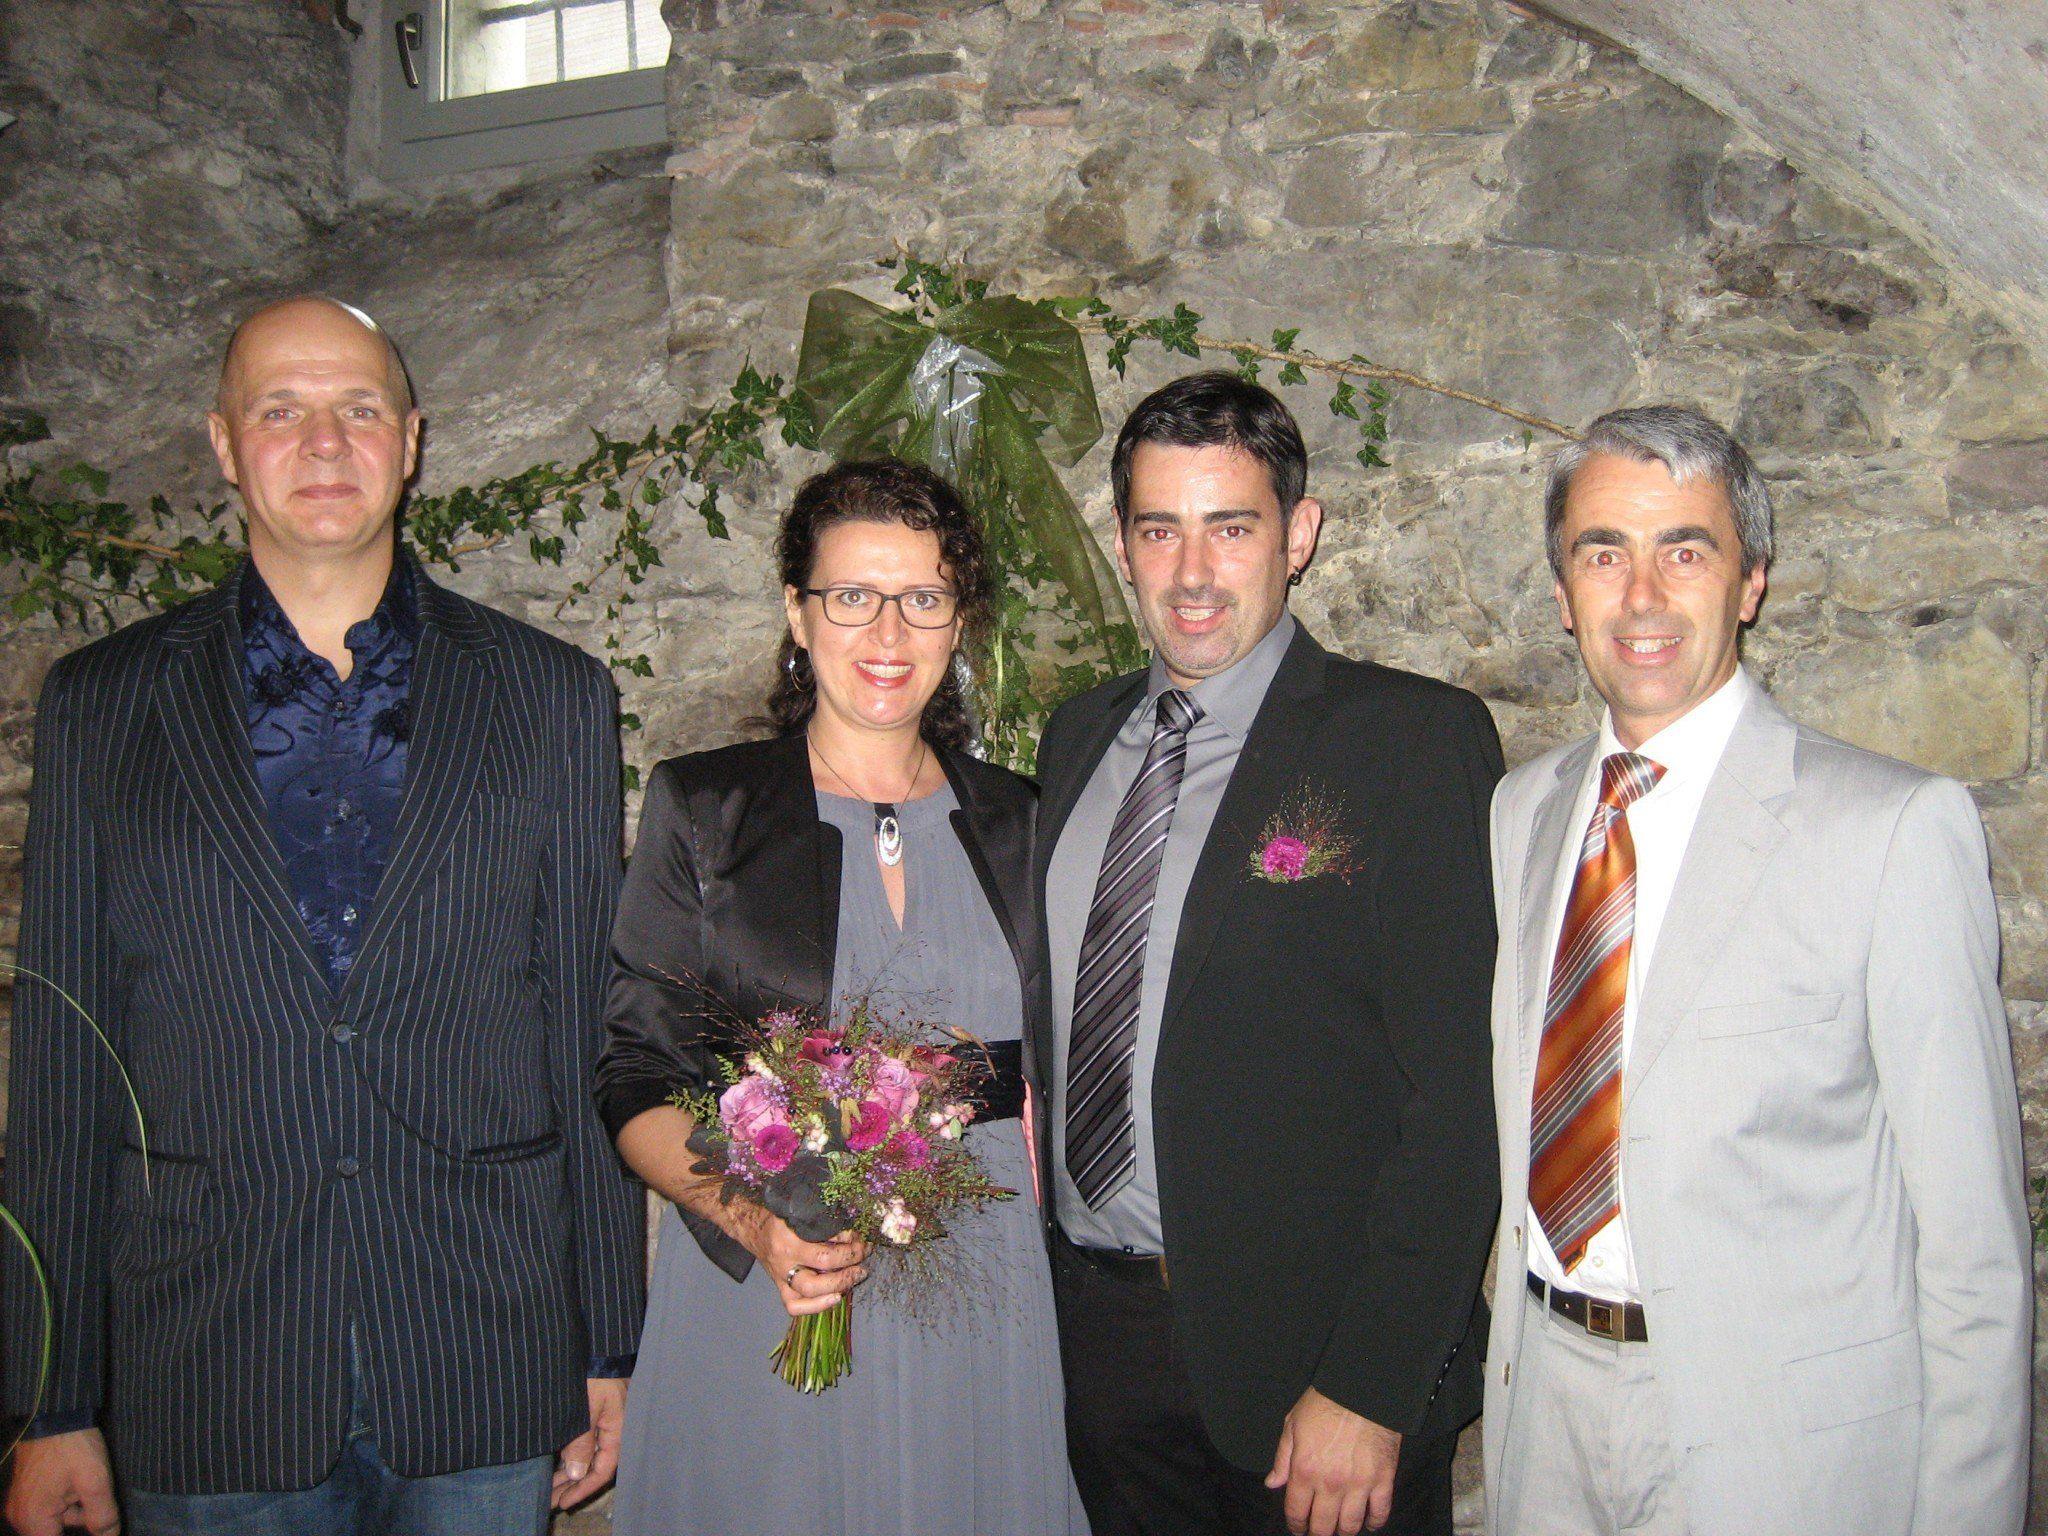 Iris Penz und Martin Burtscher haben geheiratet.